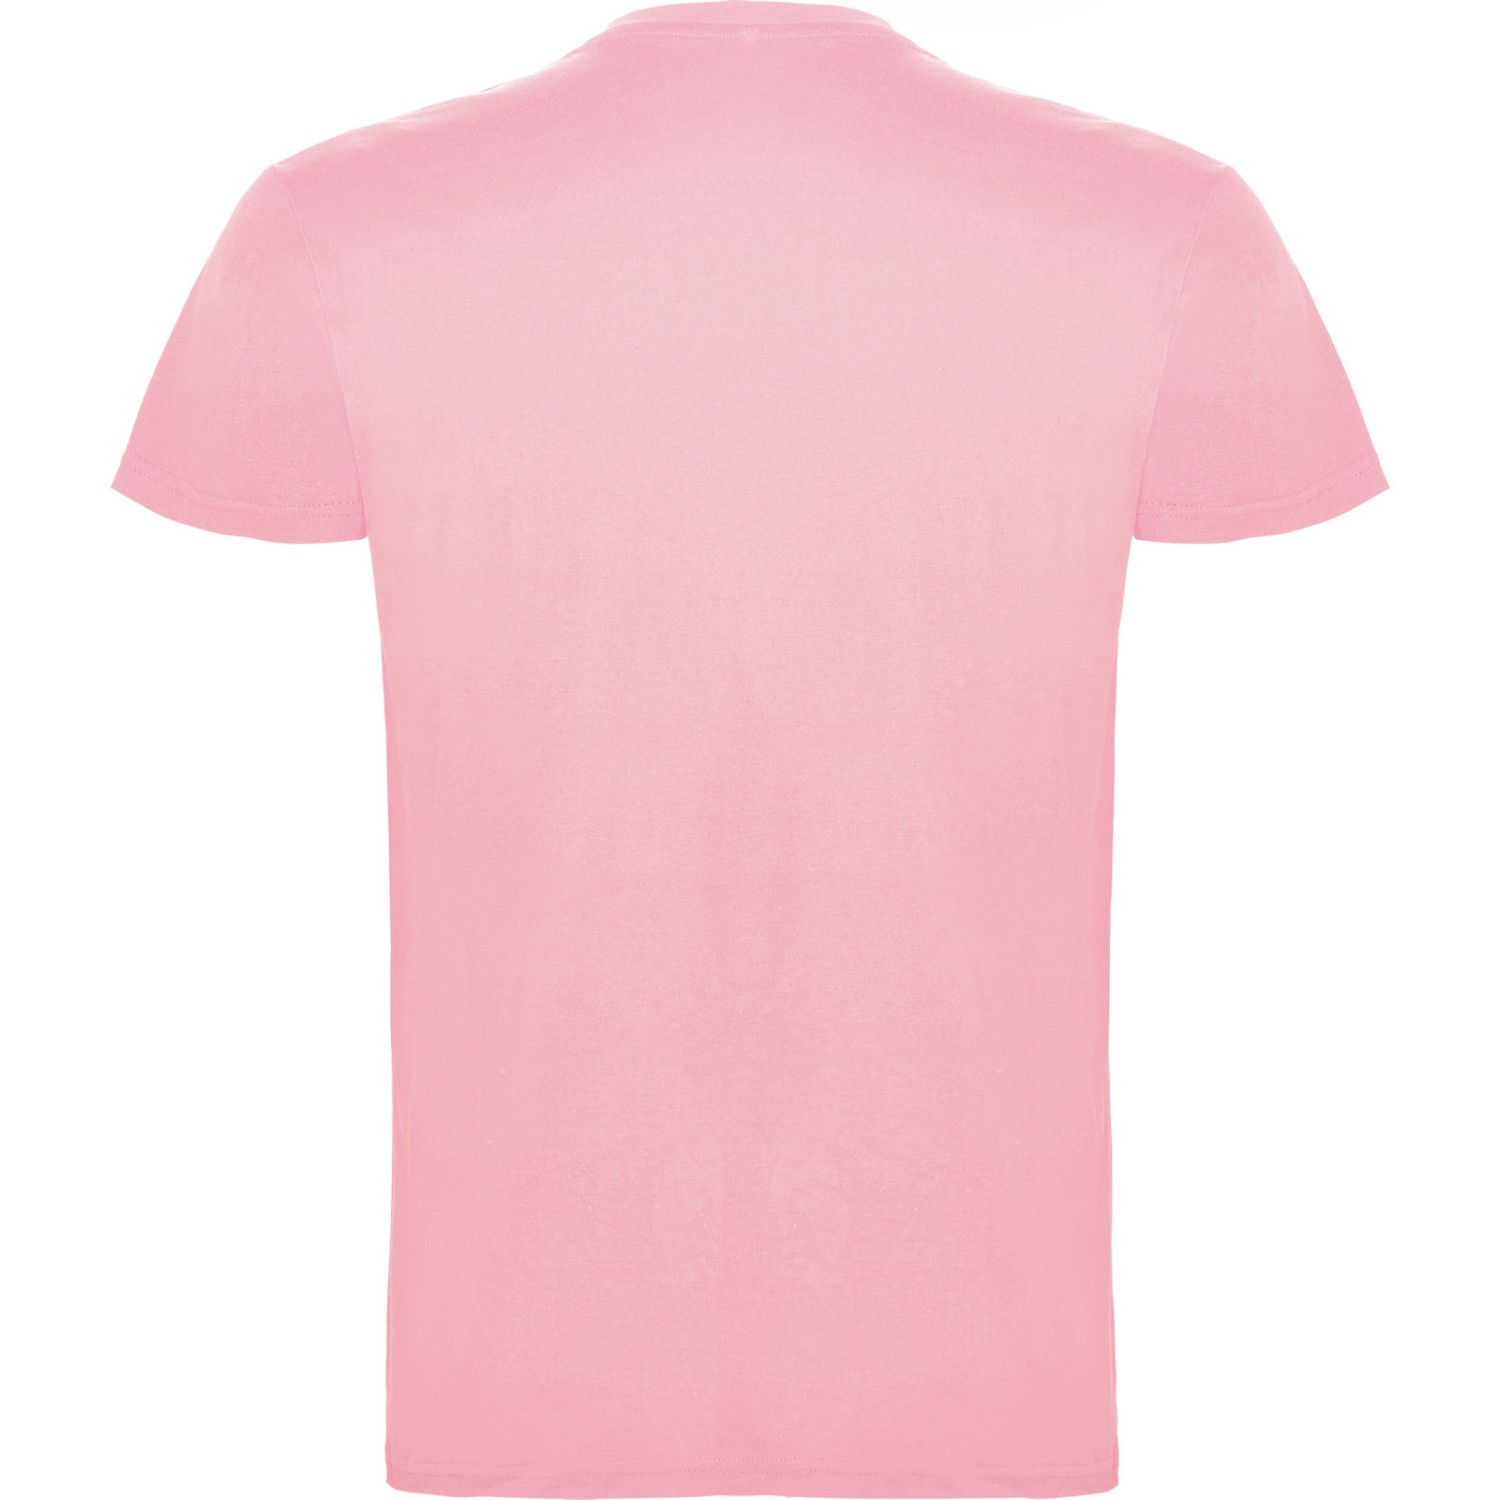 1. Foto T-Shirt BEAGLE Kurzarm Rundhals mit Druck (Farbe: light pink Größe: M)